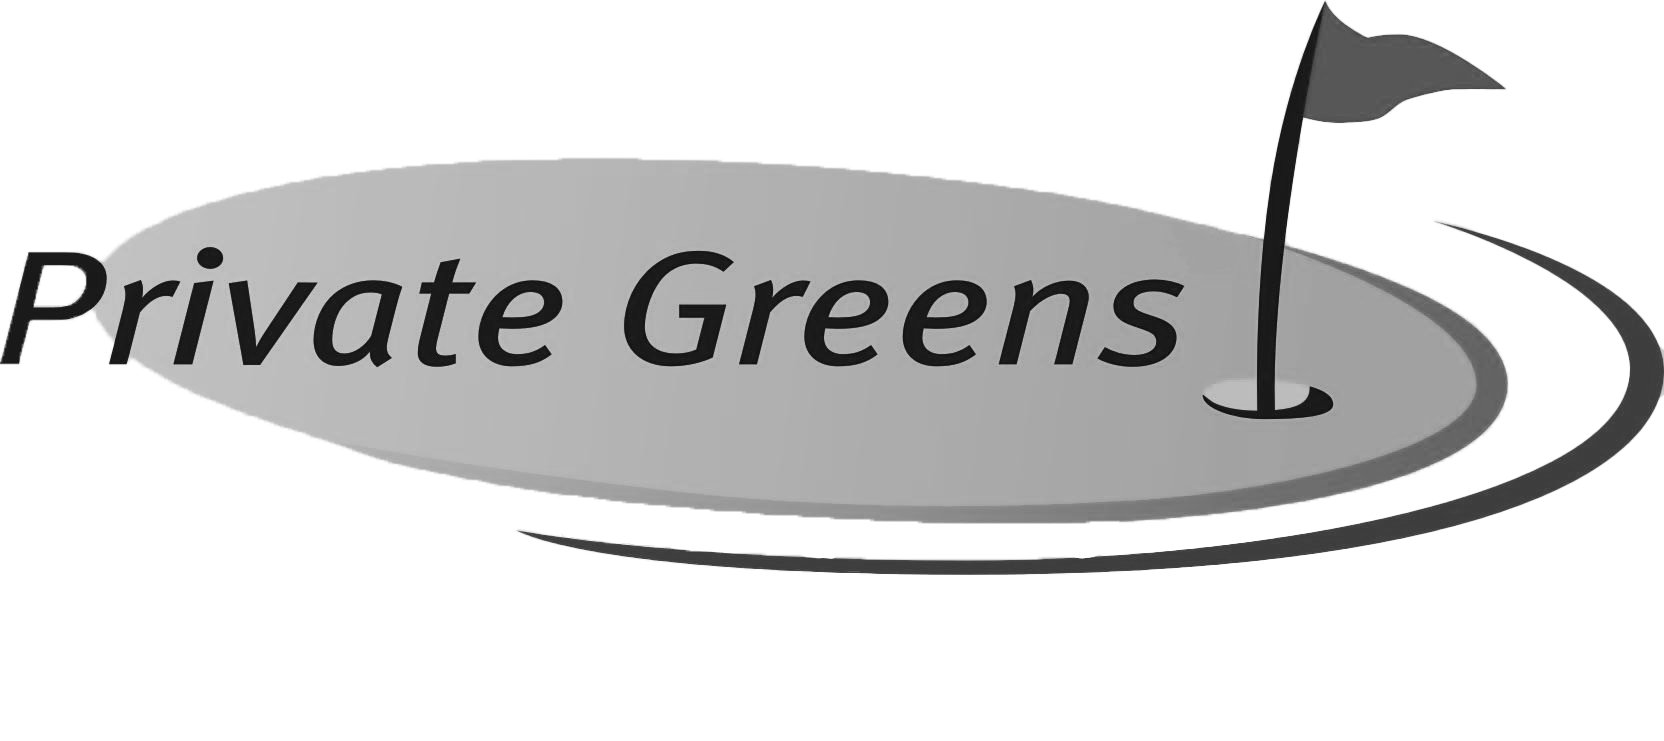 Private Greens Kopie